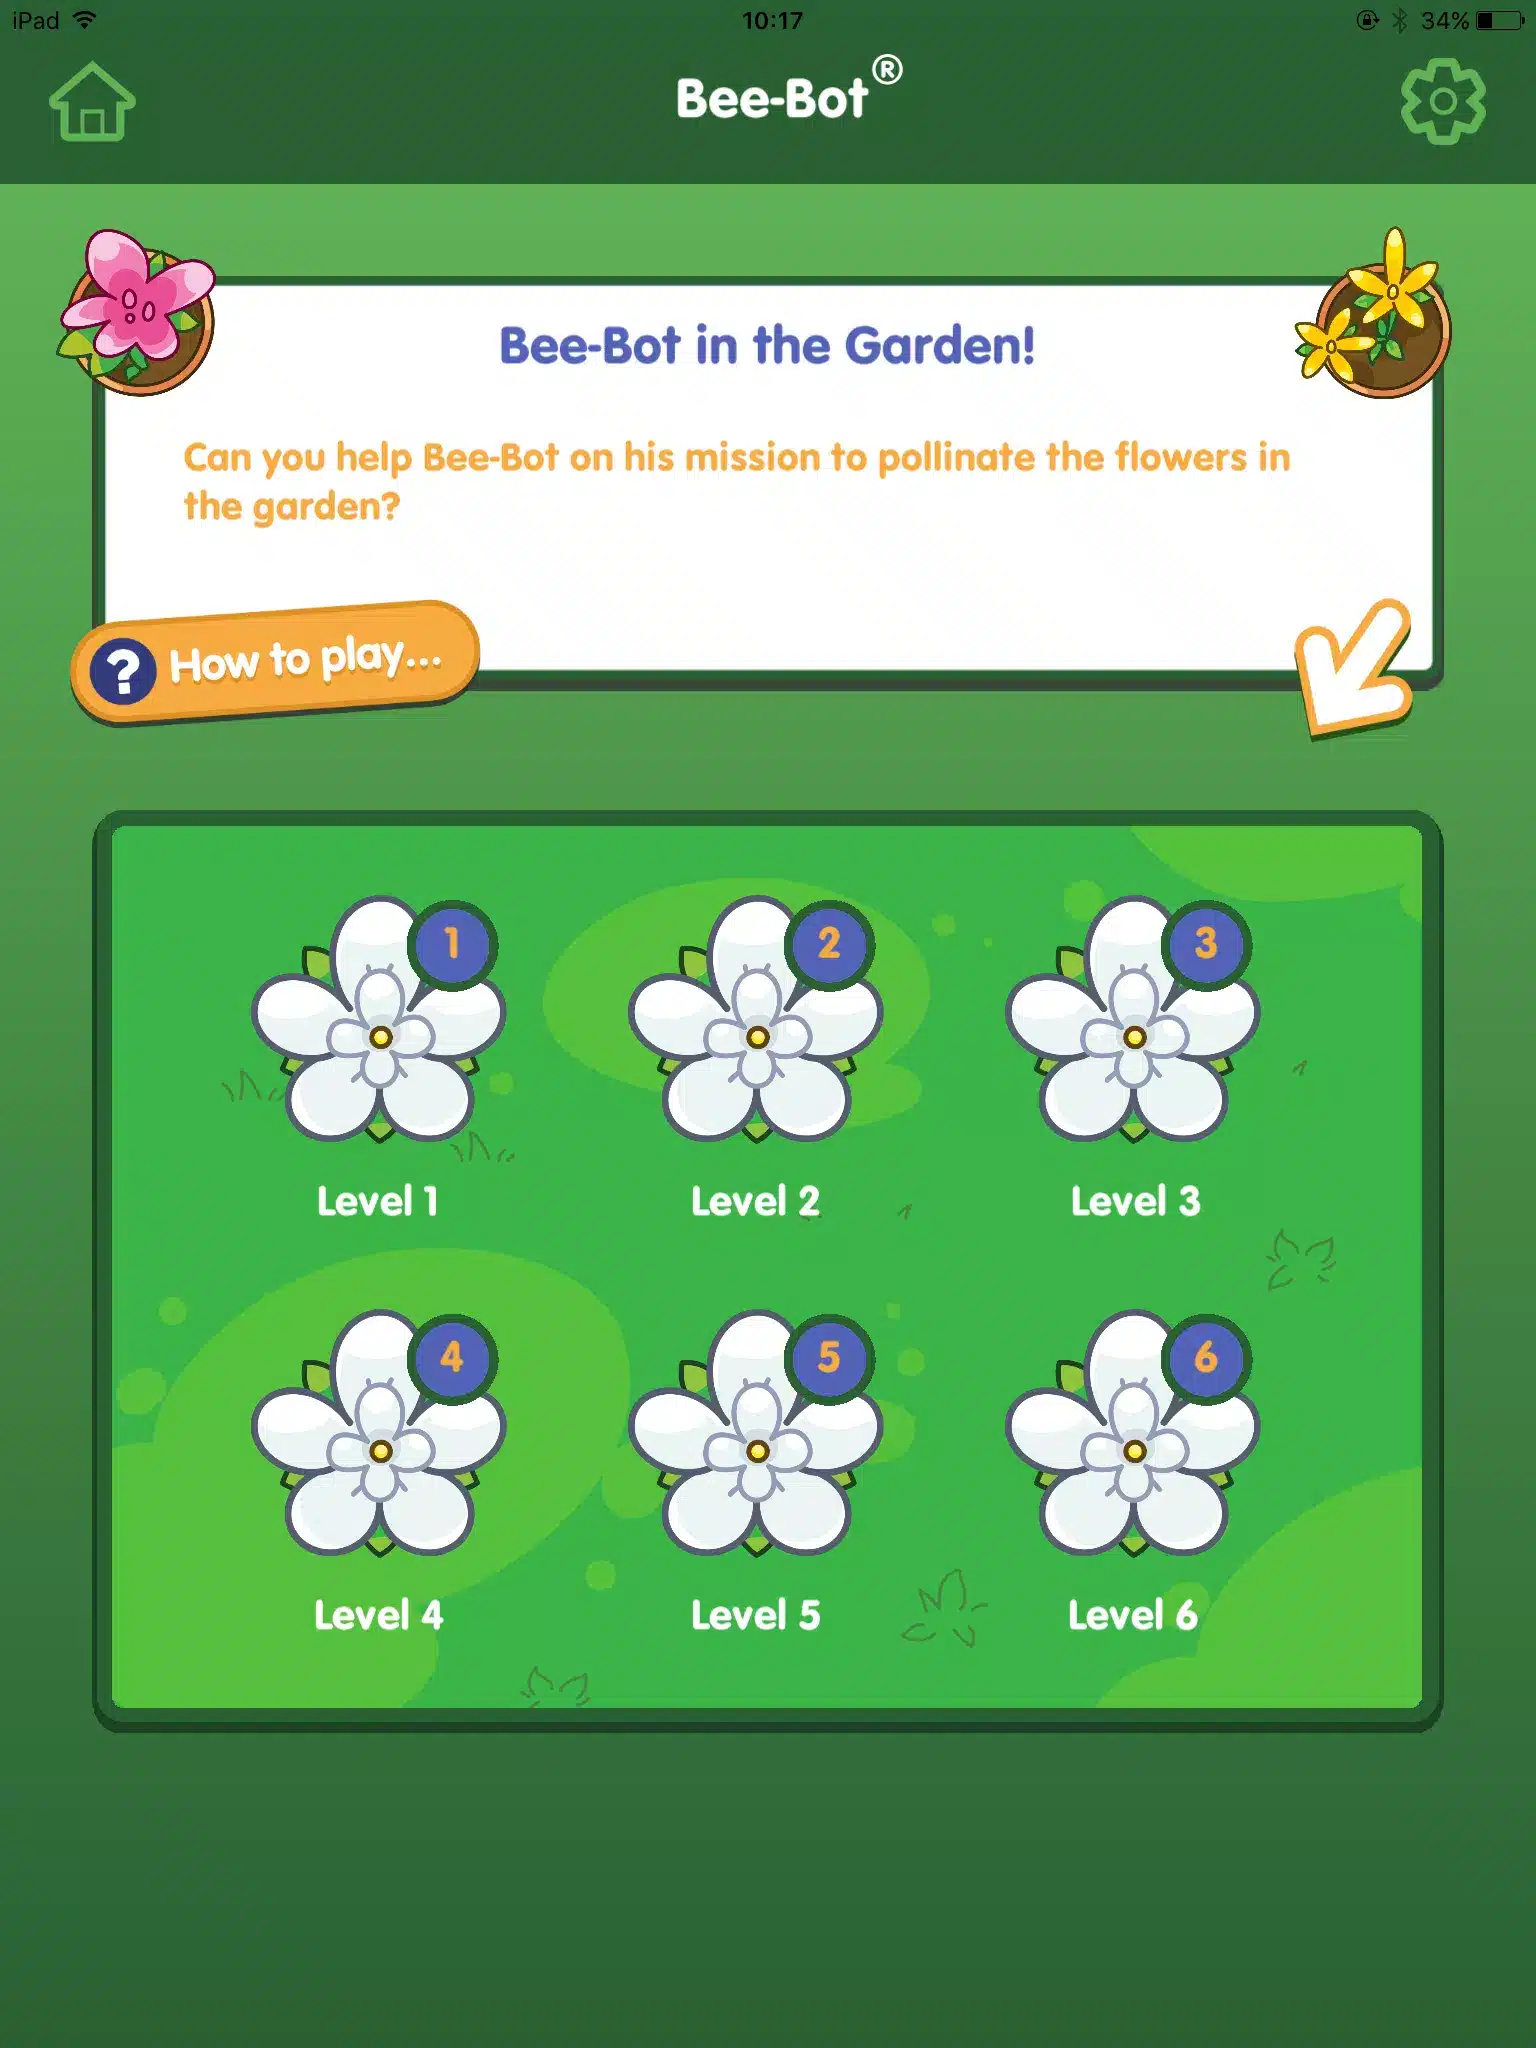 Bee-Bot Image 2